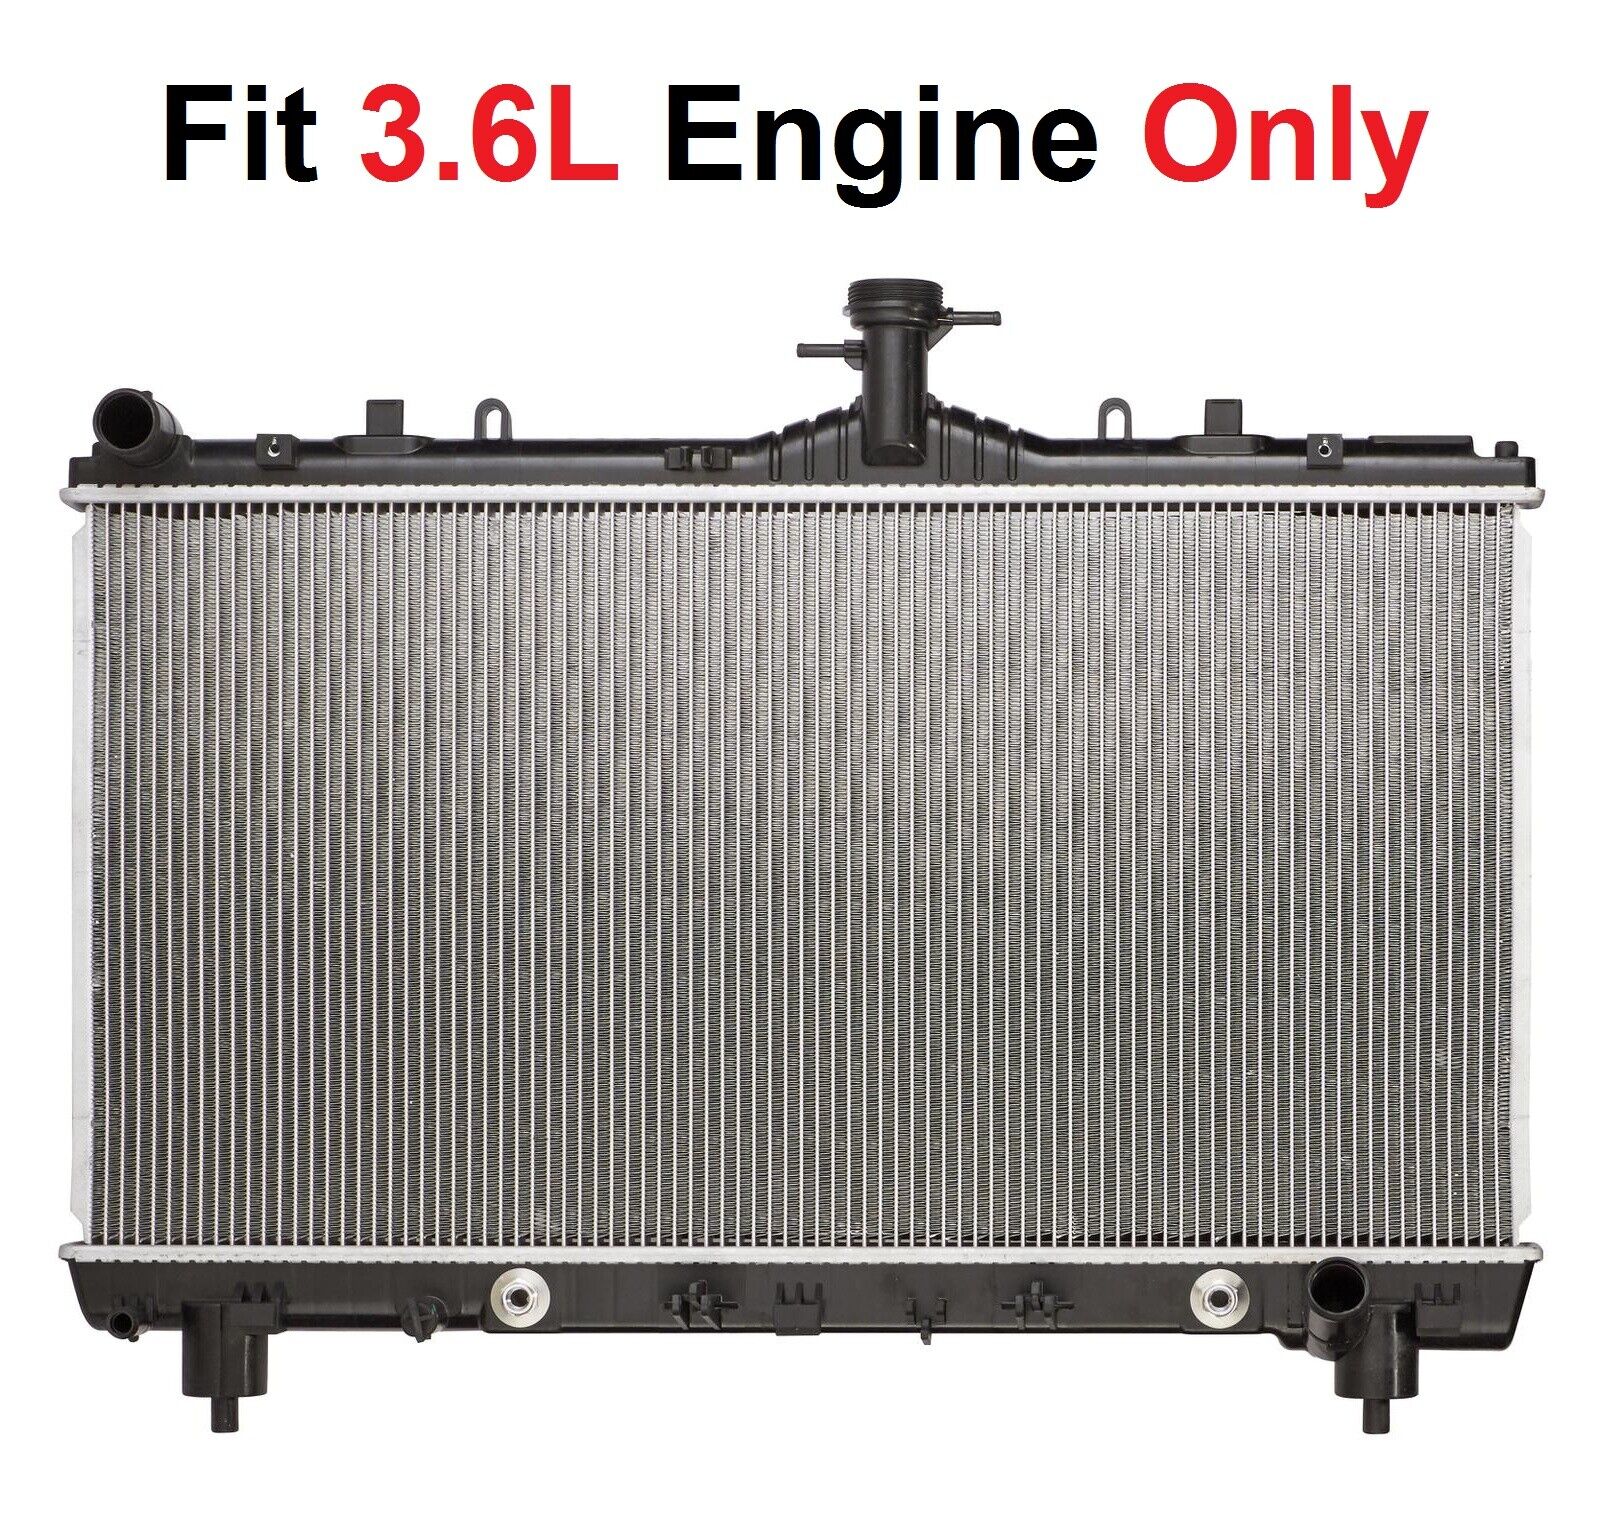 RADIATOR 13341 Fits 2012-2015 CHEVROLET CAMARO 3.6L V6 ONLY